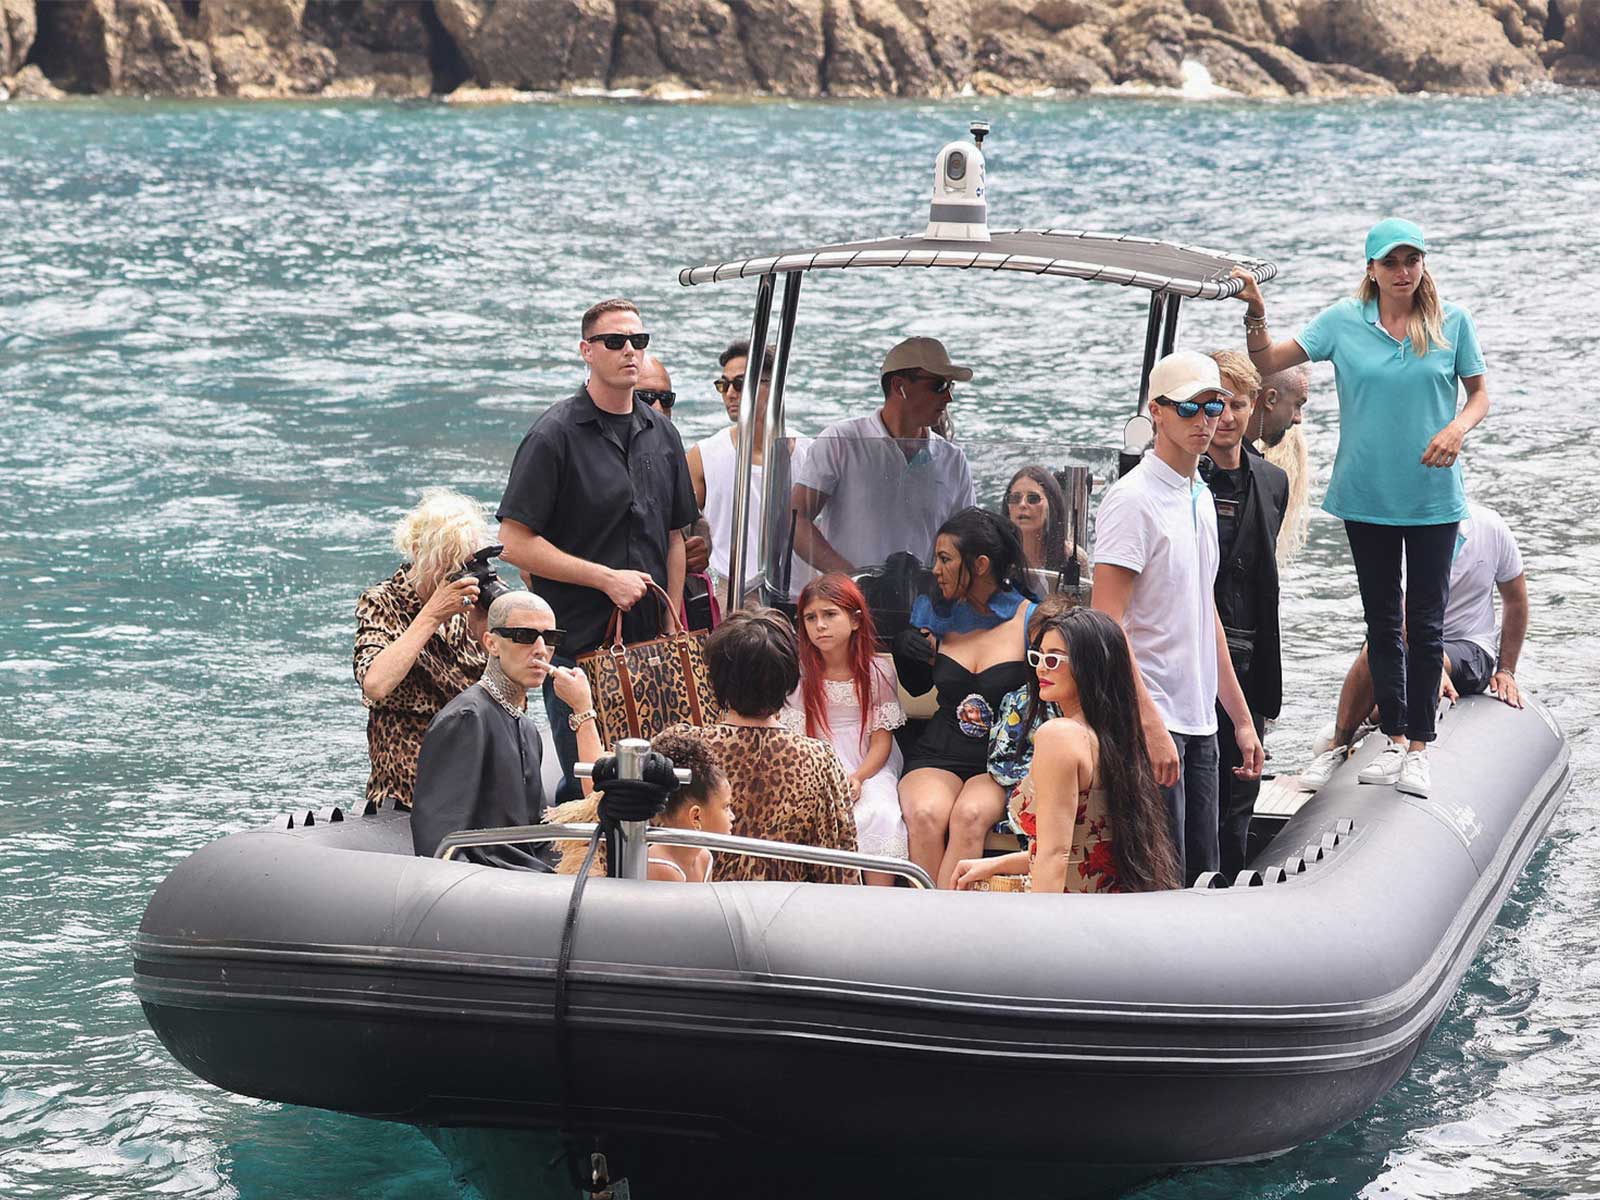 La familia Kardashian/Jenner conquista Portofino